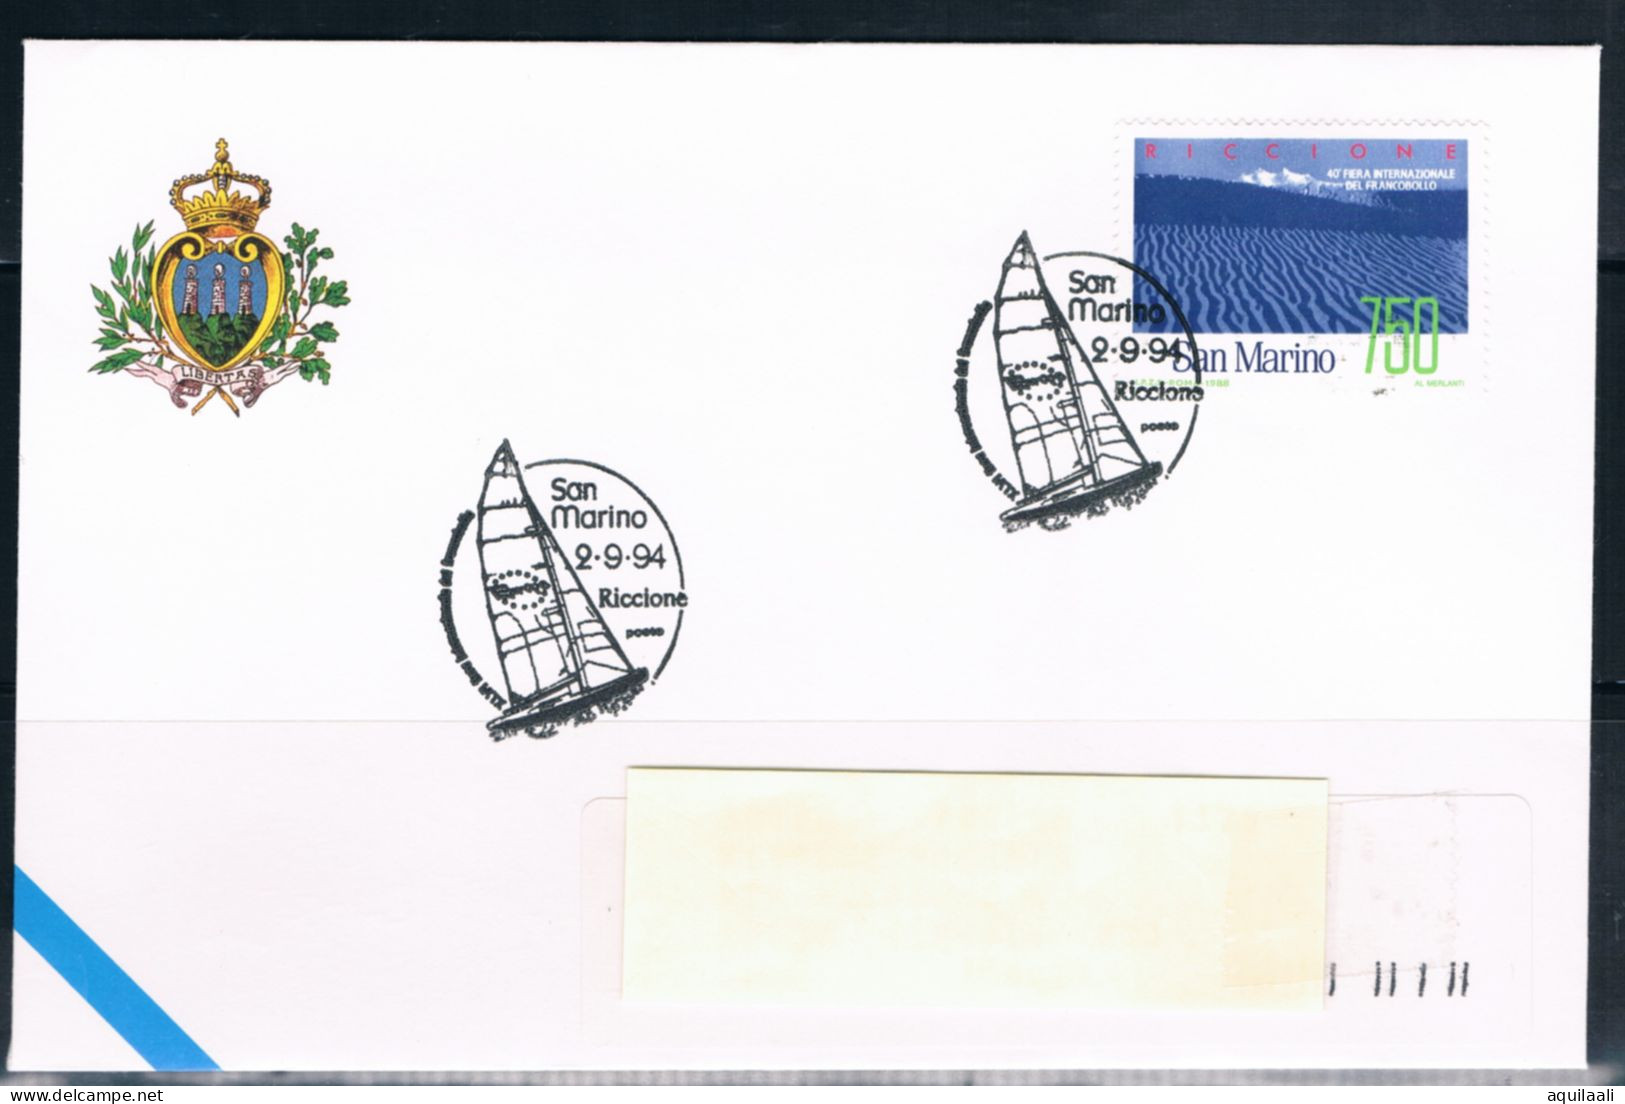 SAN MARINO 1994 - Riccione, Fiera Del Francobollo, Annullo Speciale. - Briefmarkenausstellungen